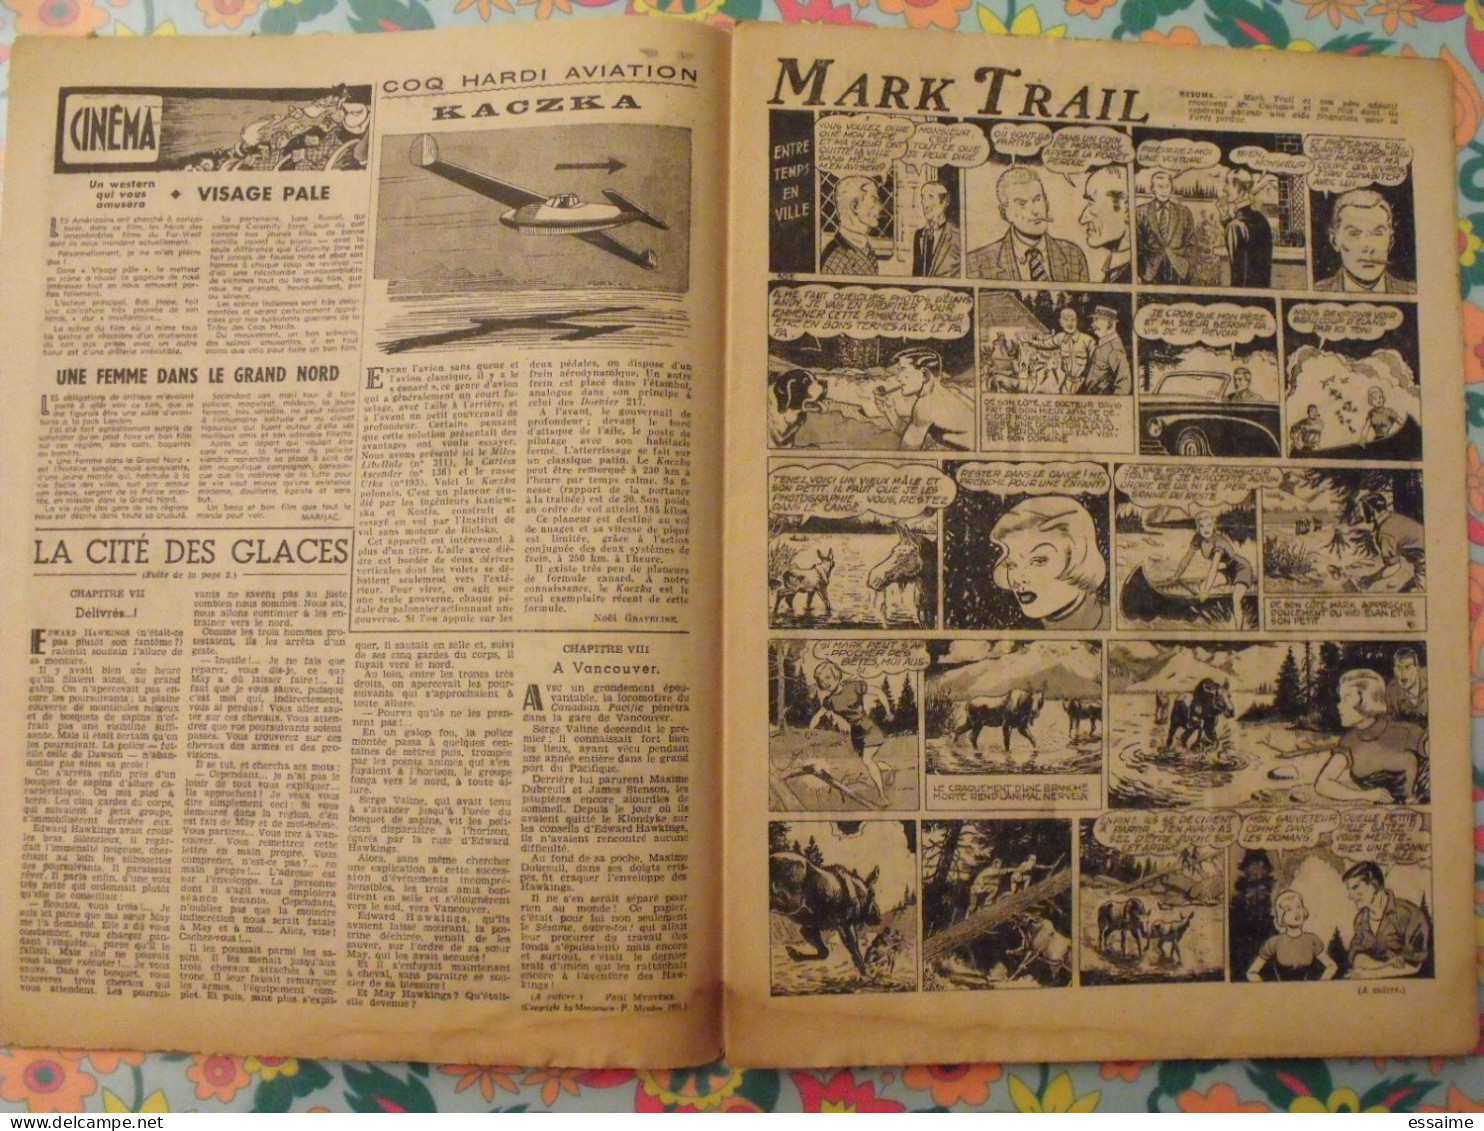 9 numéros de Coq Hardi de 1951. Sitting Bull, jacques canada, roland, marco polo, père noël. A redécouvrir